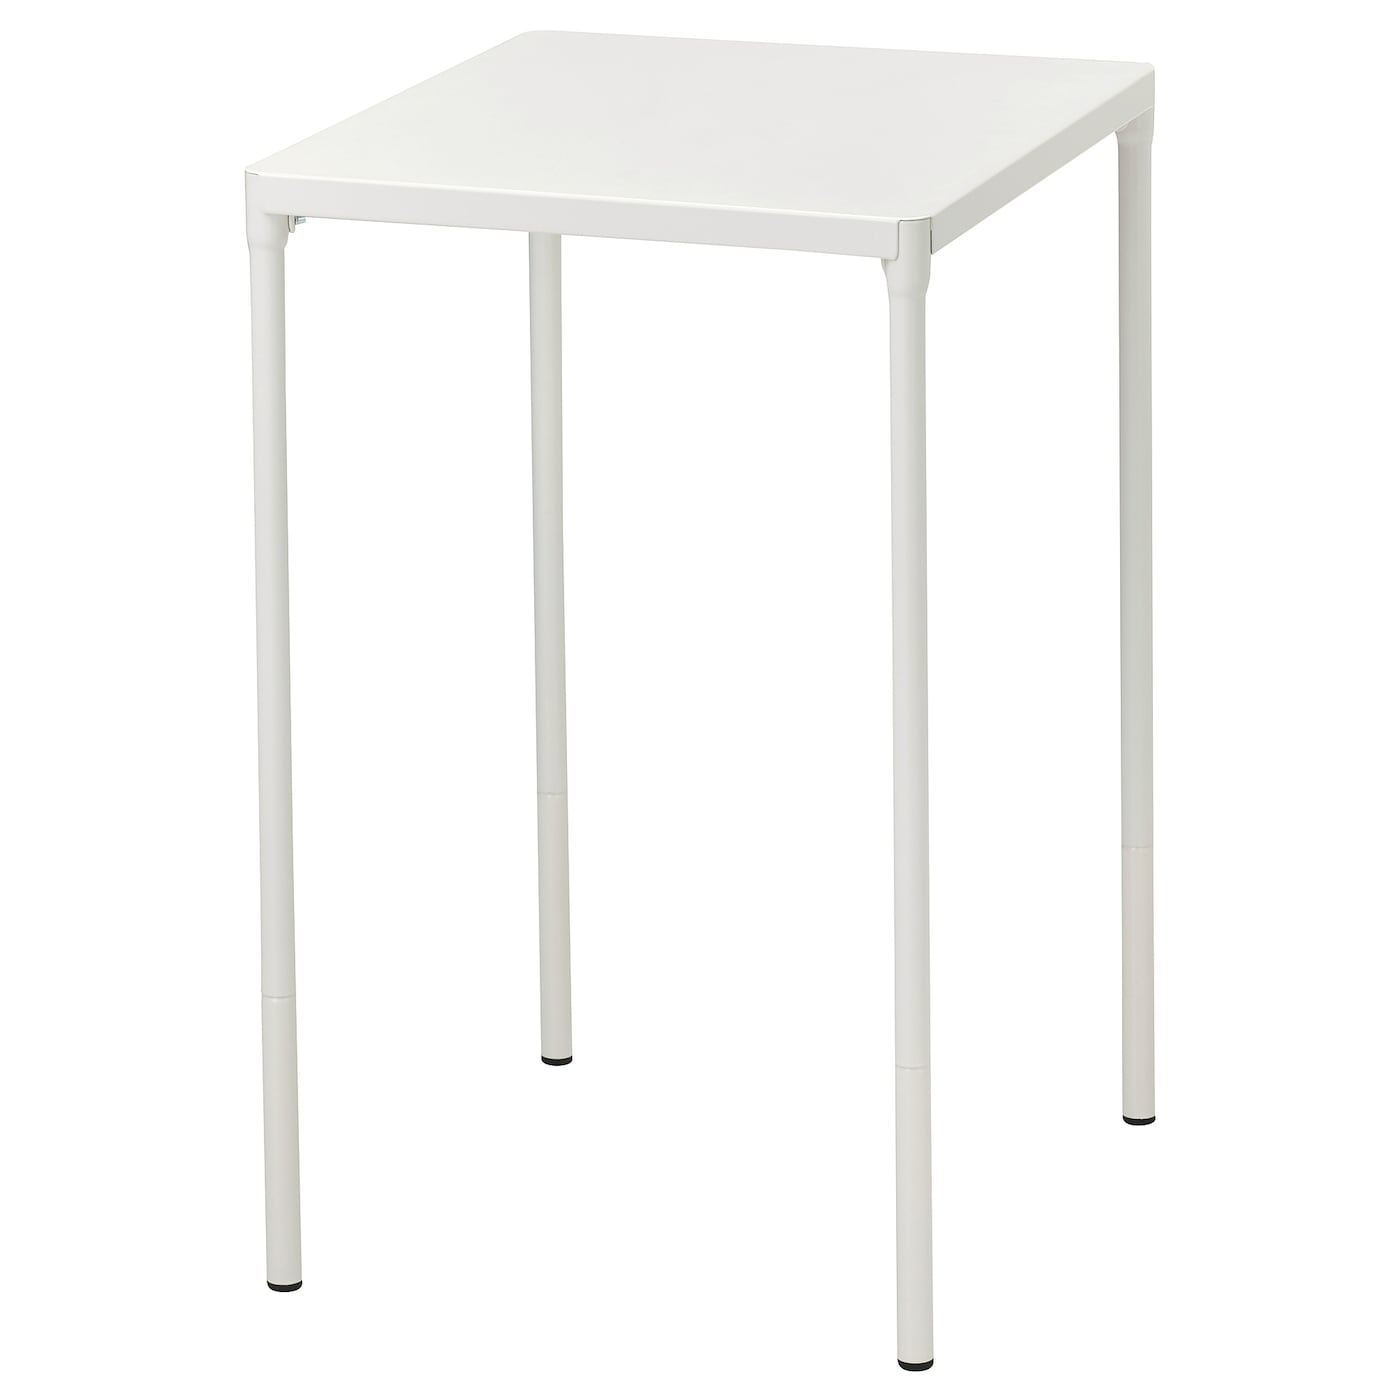 Балконный стол - IKEA FEJAN, 71x50x44см, белый, ФЕЙЯН ИКЕА